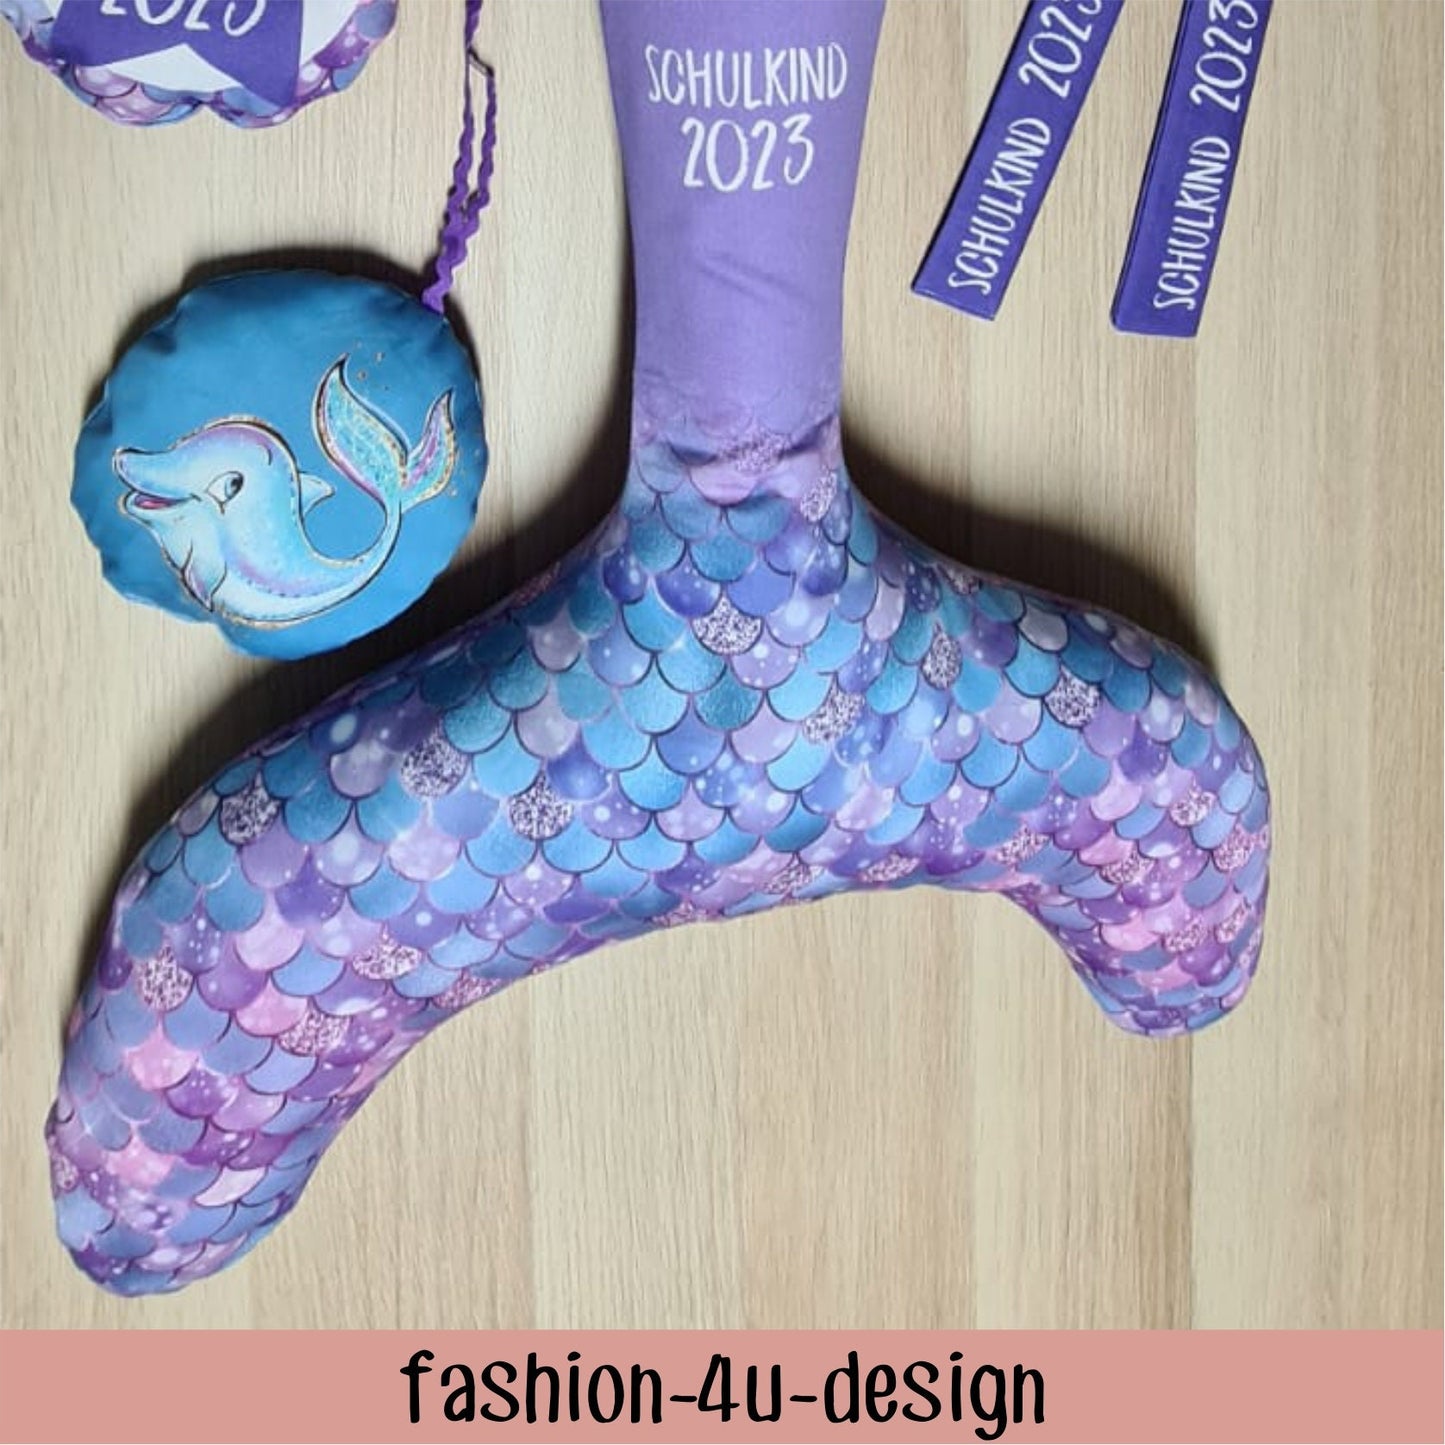 A004 Schultüte/Zuckertüte: Meerjungfrau mit Flosse - Baumwoll-Panel zum selber nähen - DIY Näh-Set 70 cm - mit Namen & Schulkind 2024